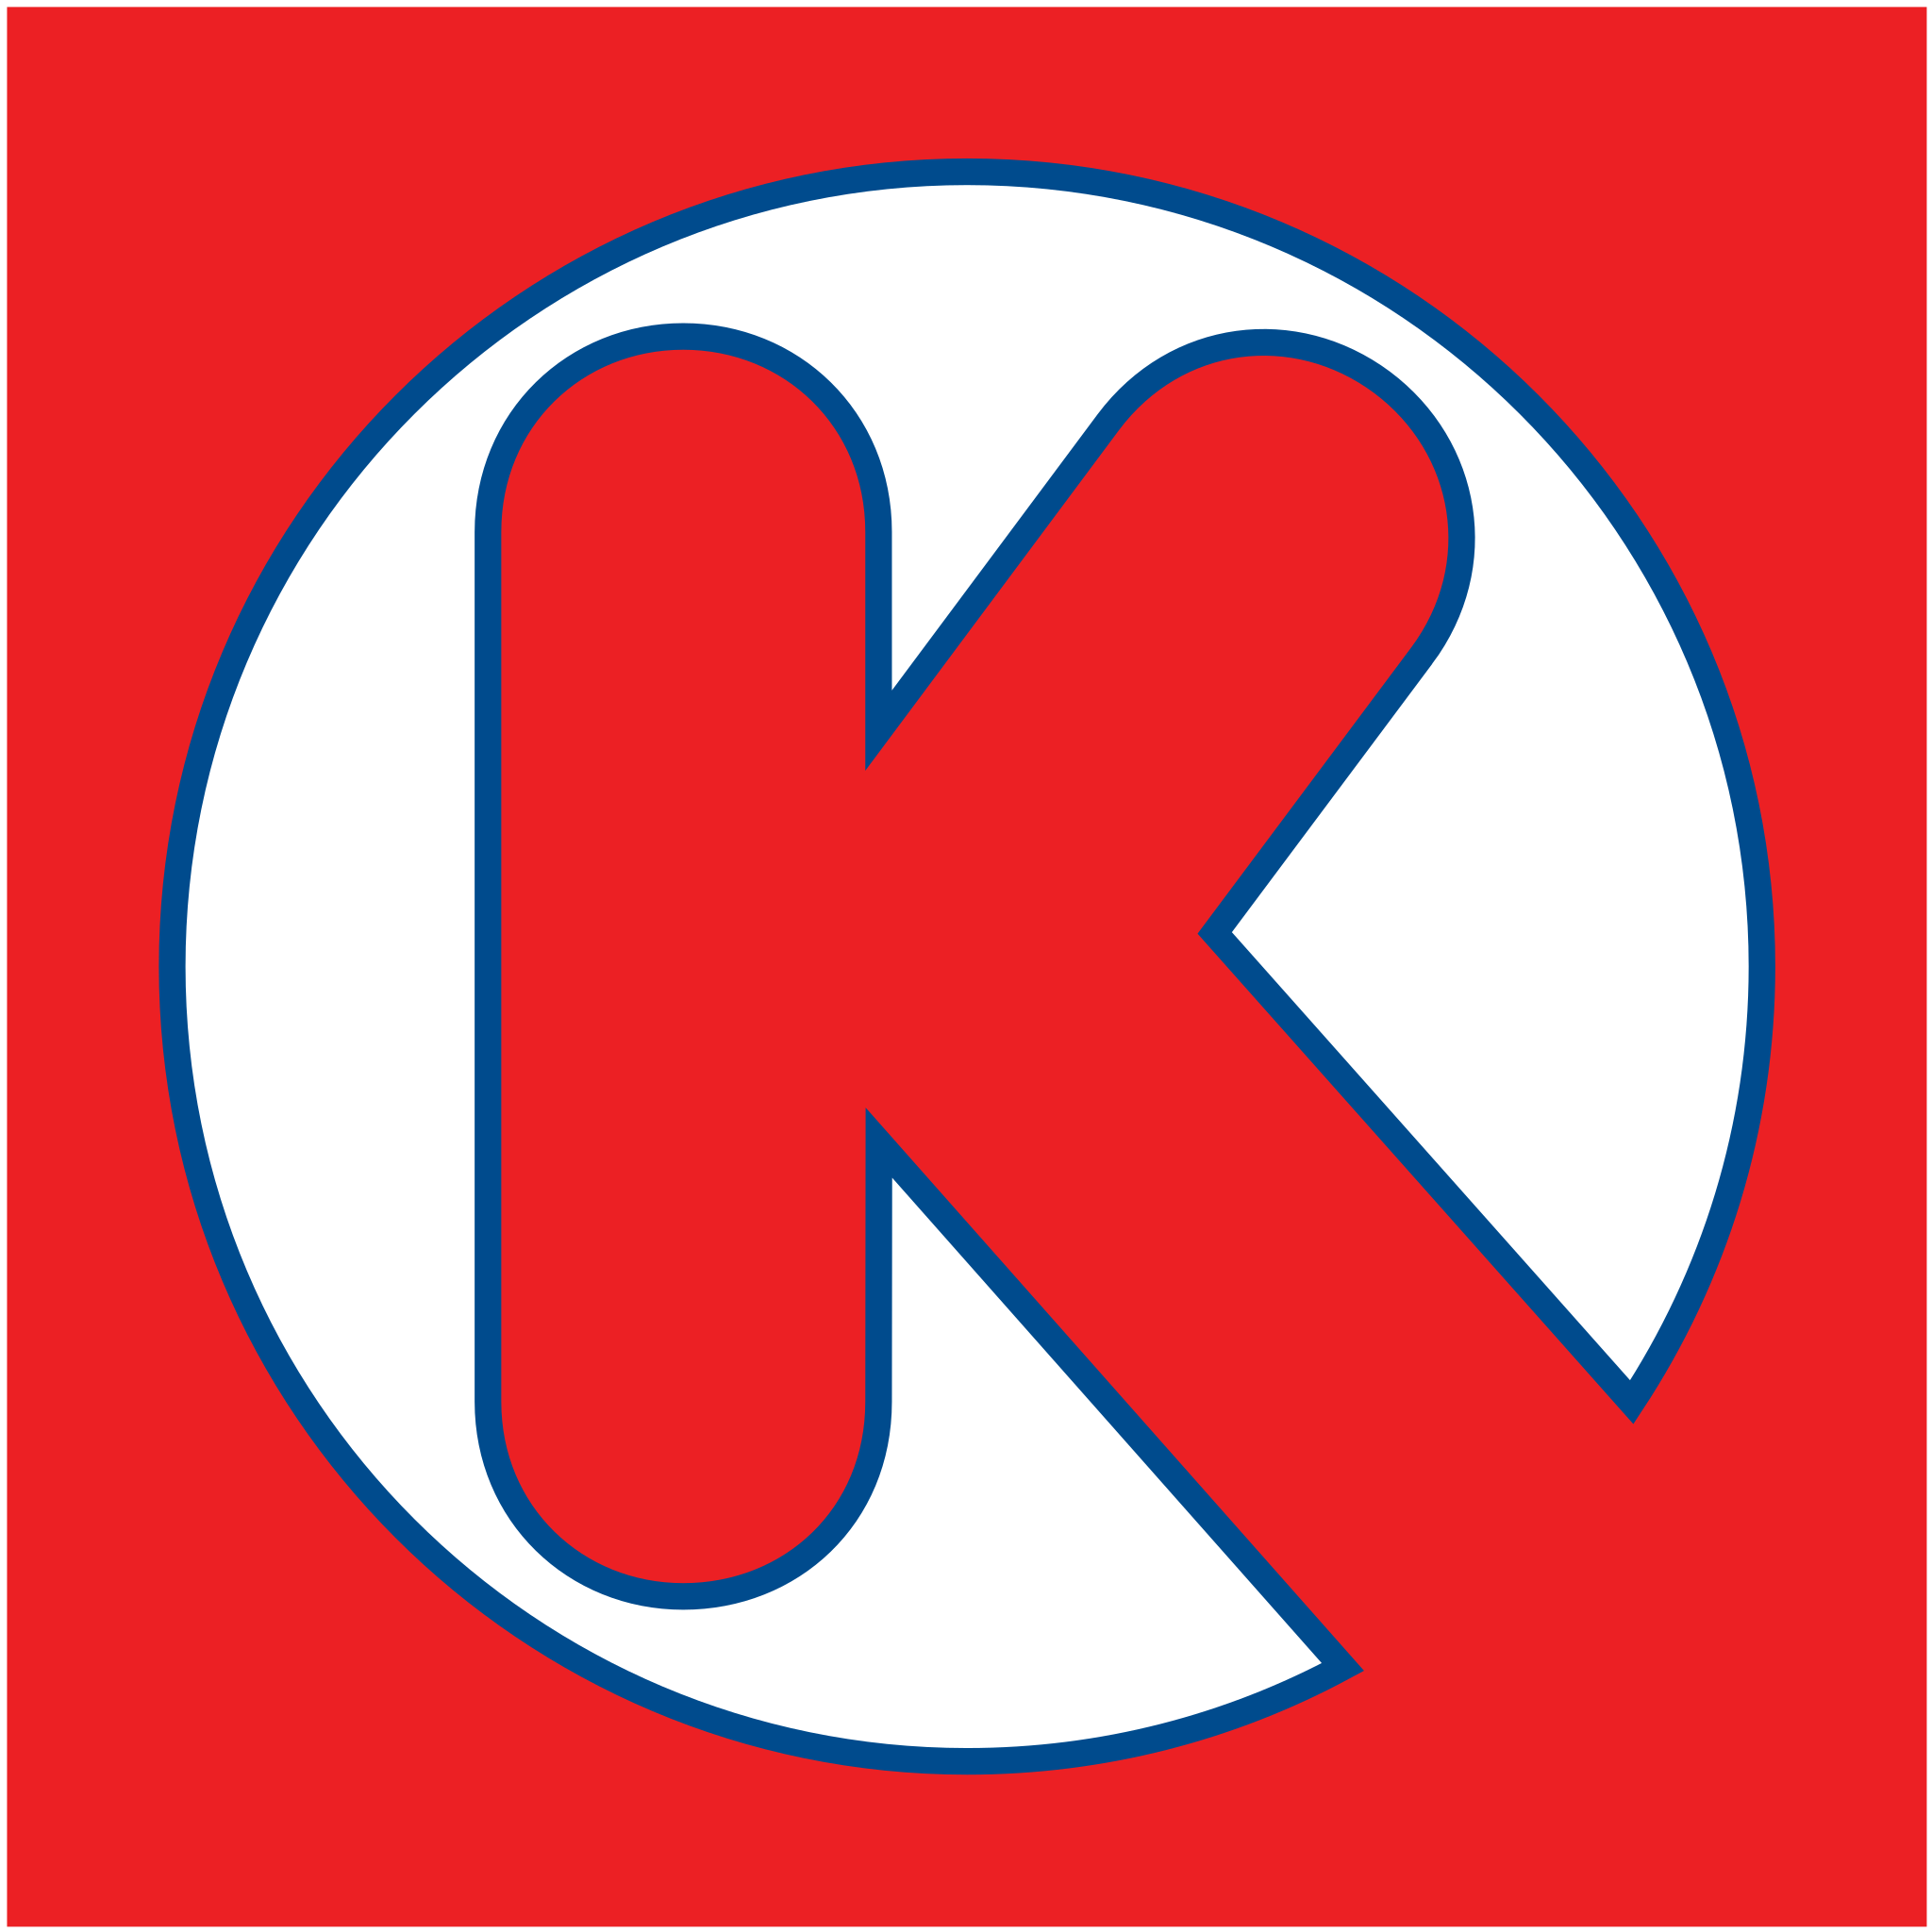 circle k logo png